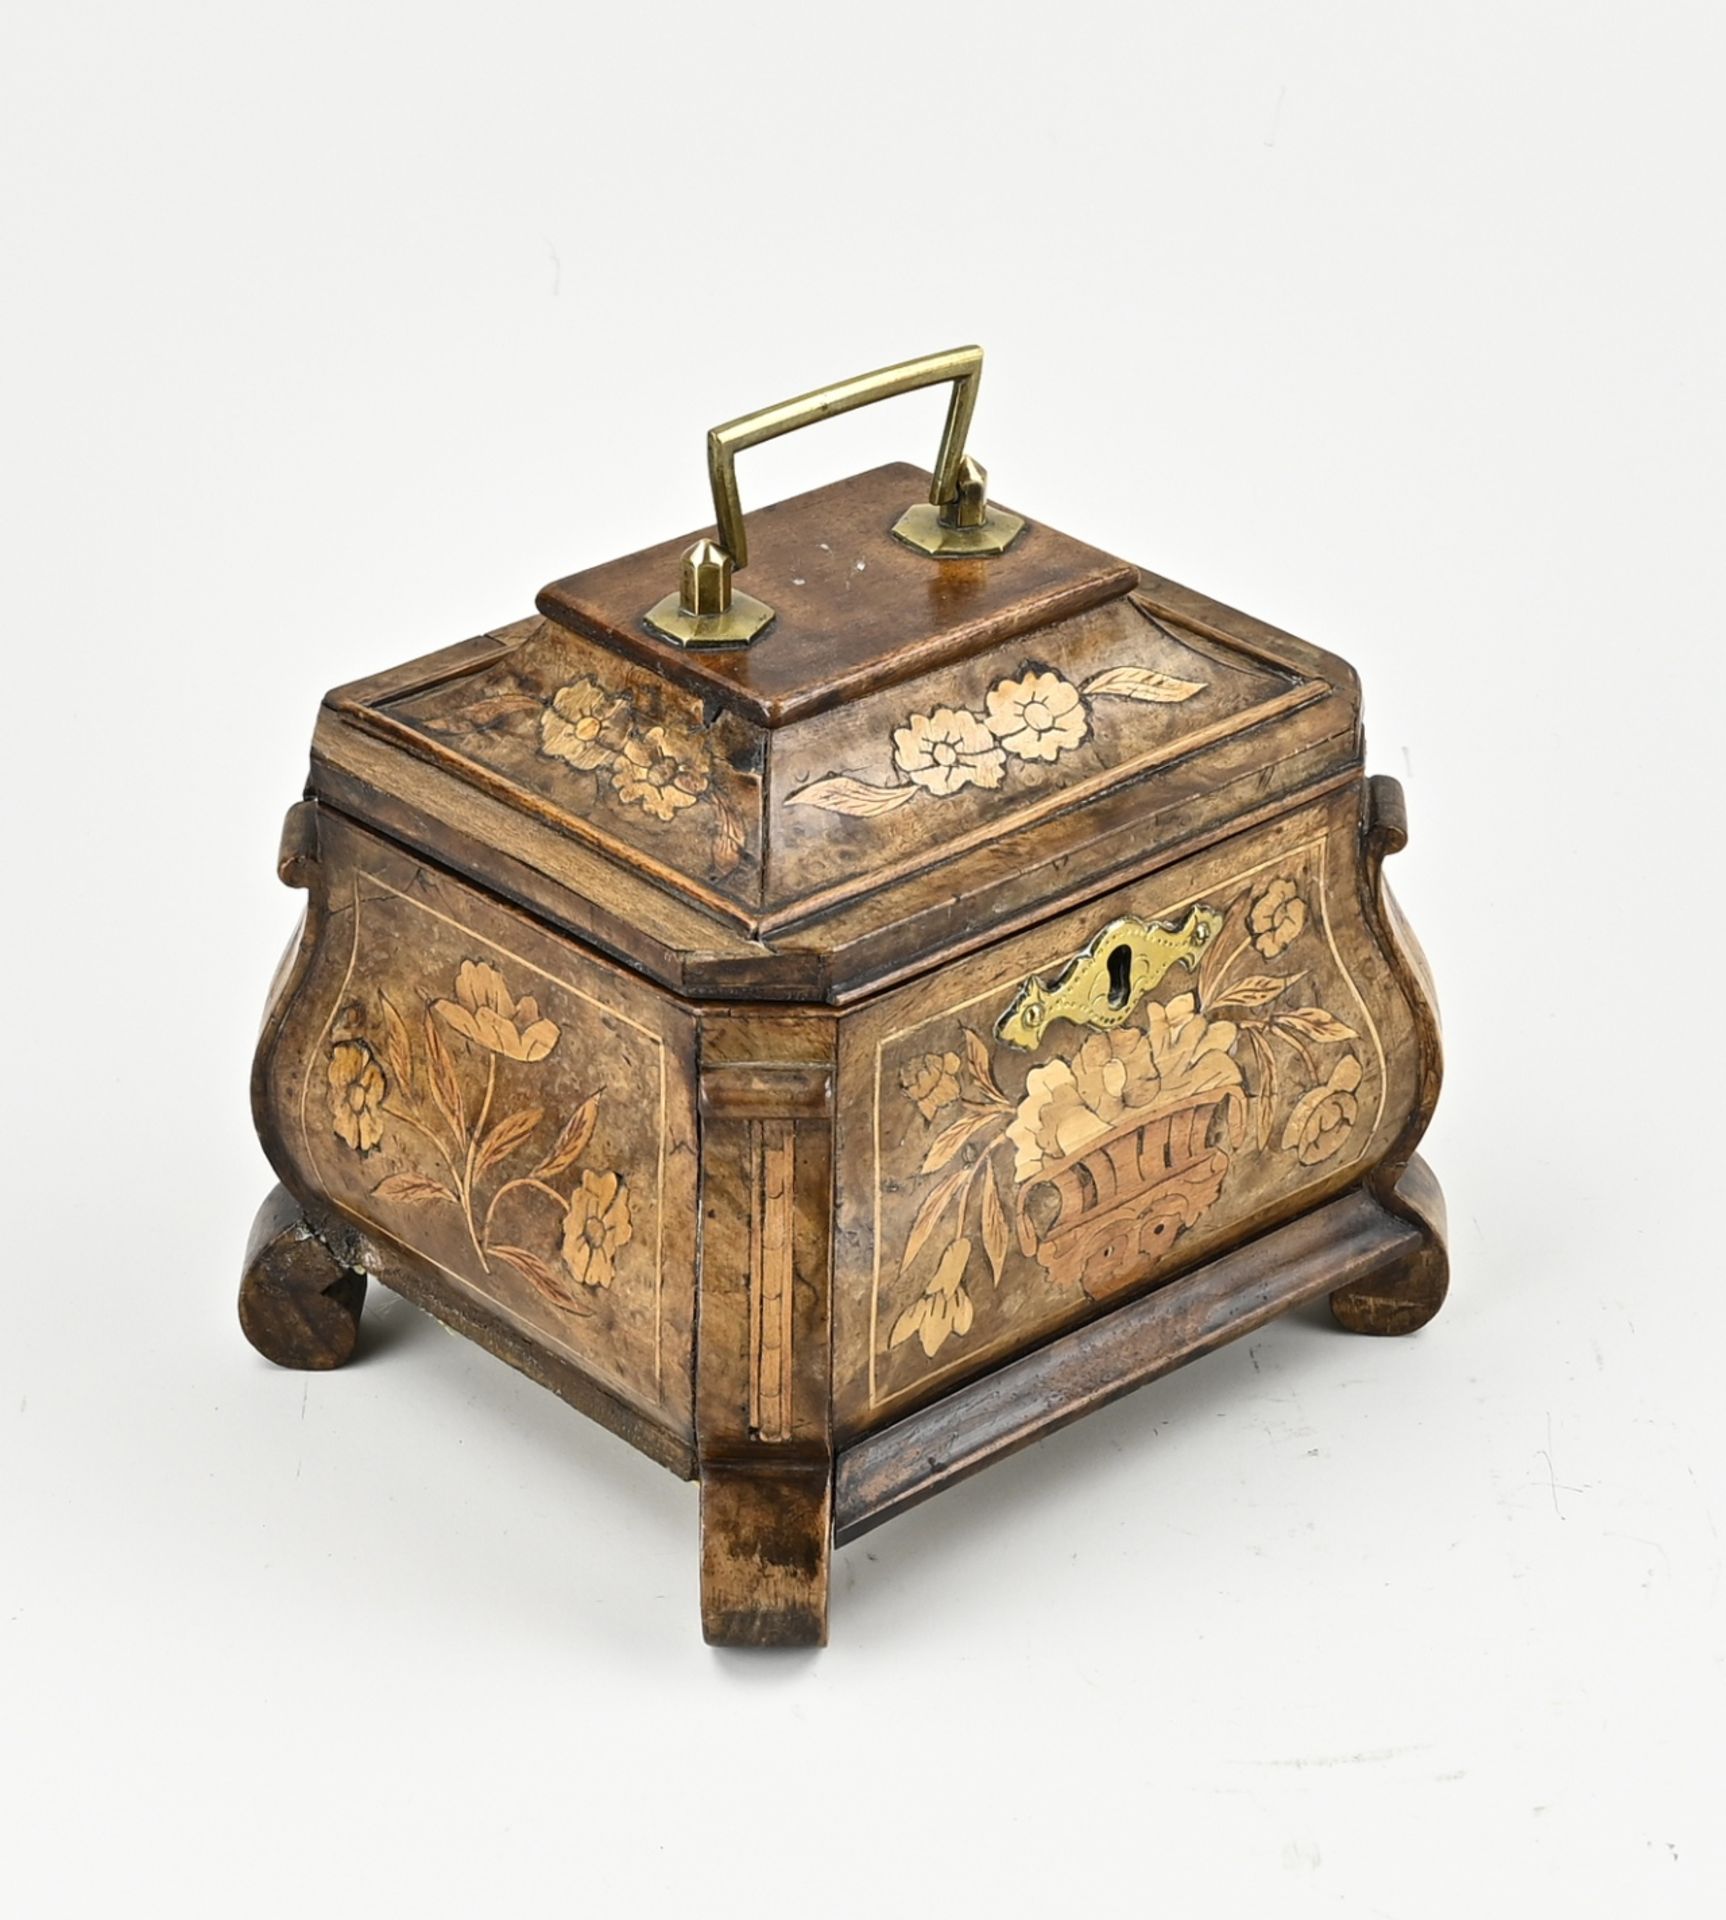 18th century tea chest